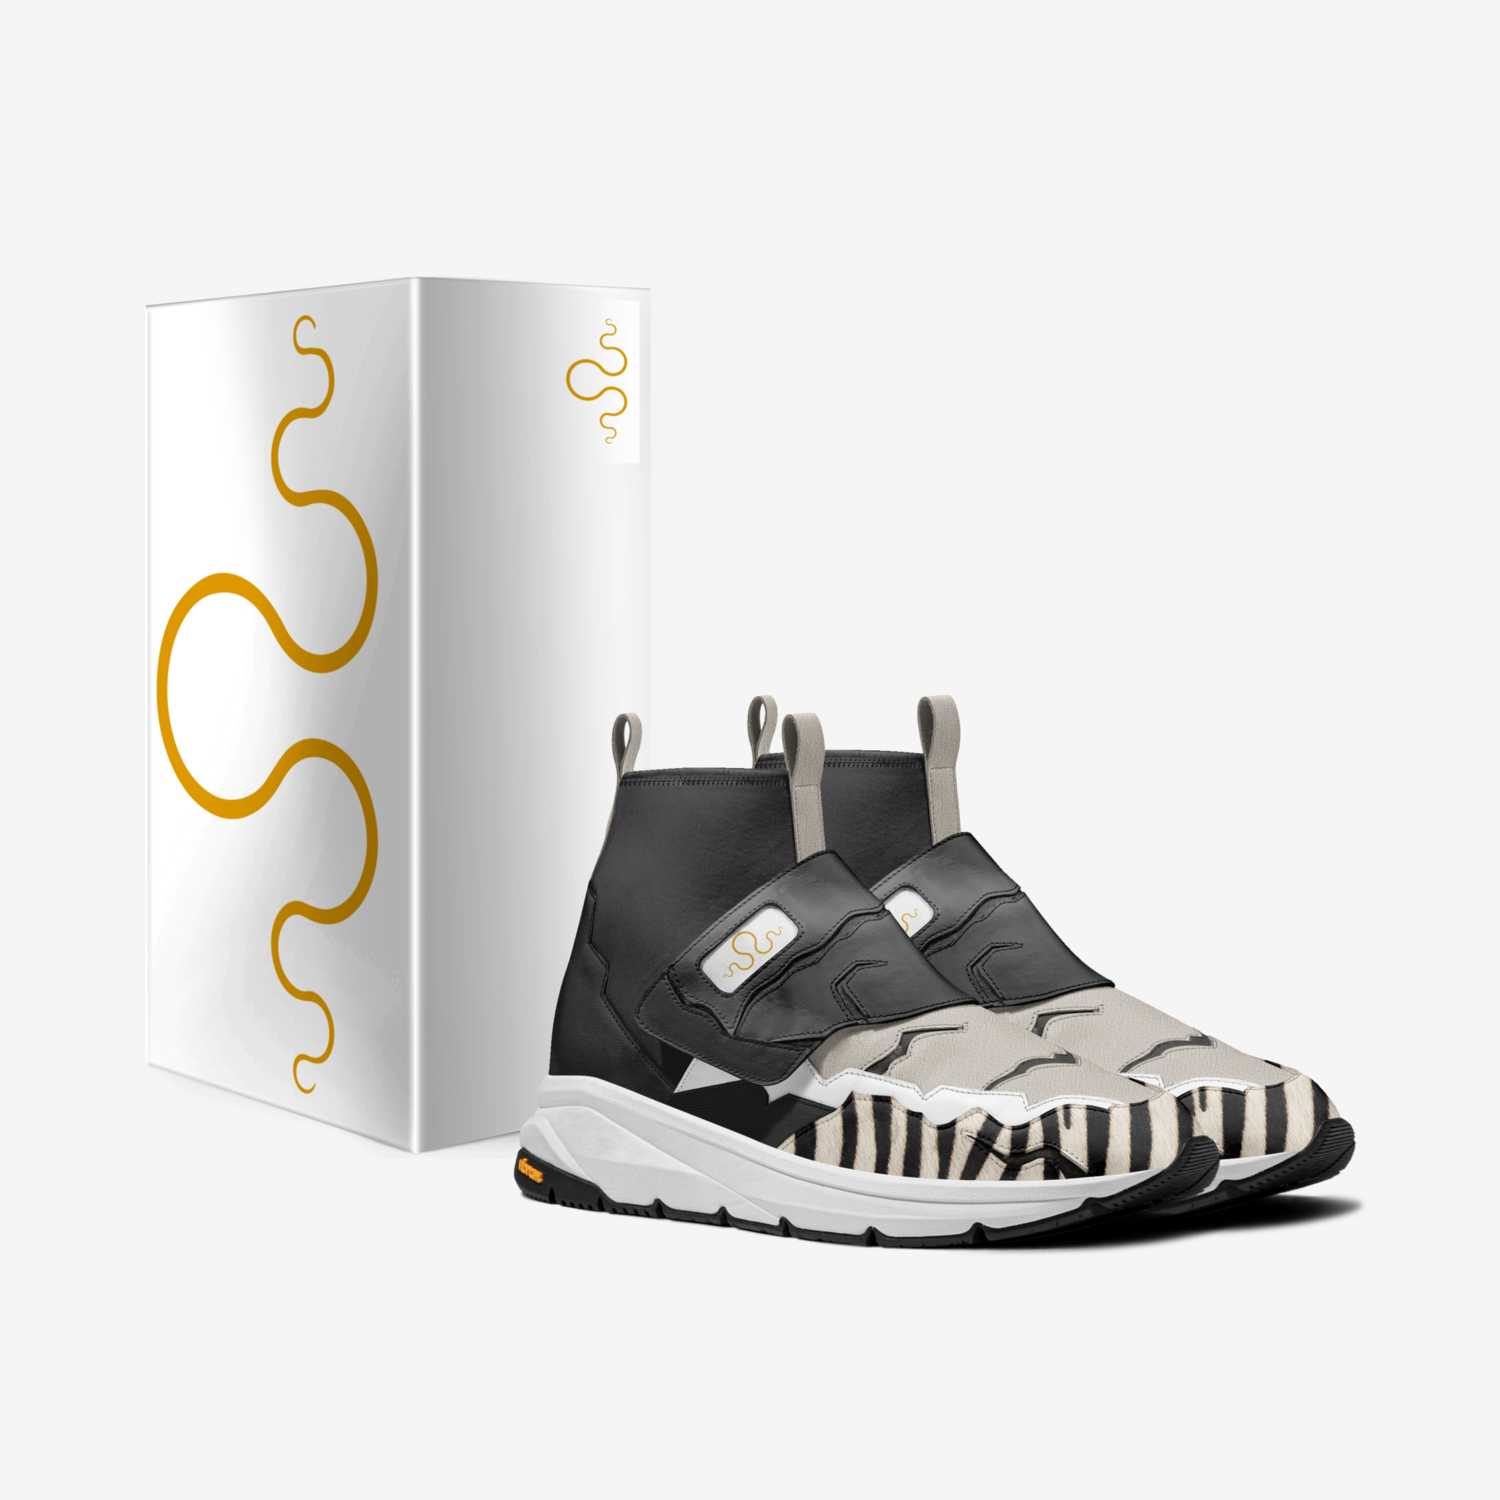 Kraken 1 custom made in Italy shoes by Carlos Segarra | Box view